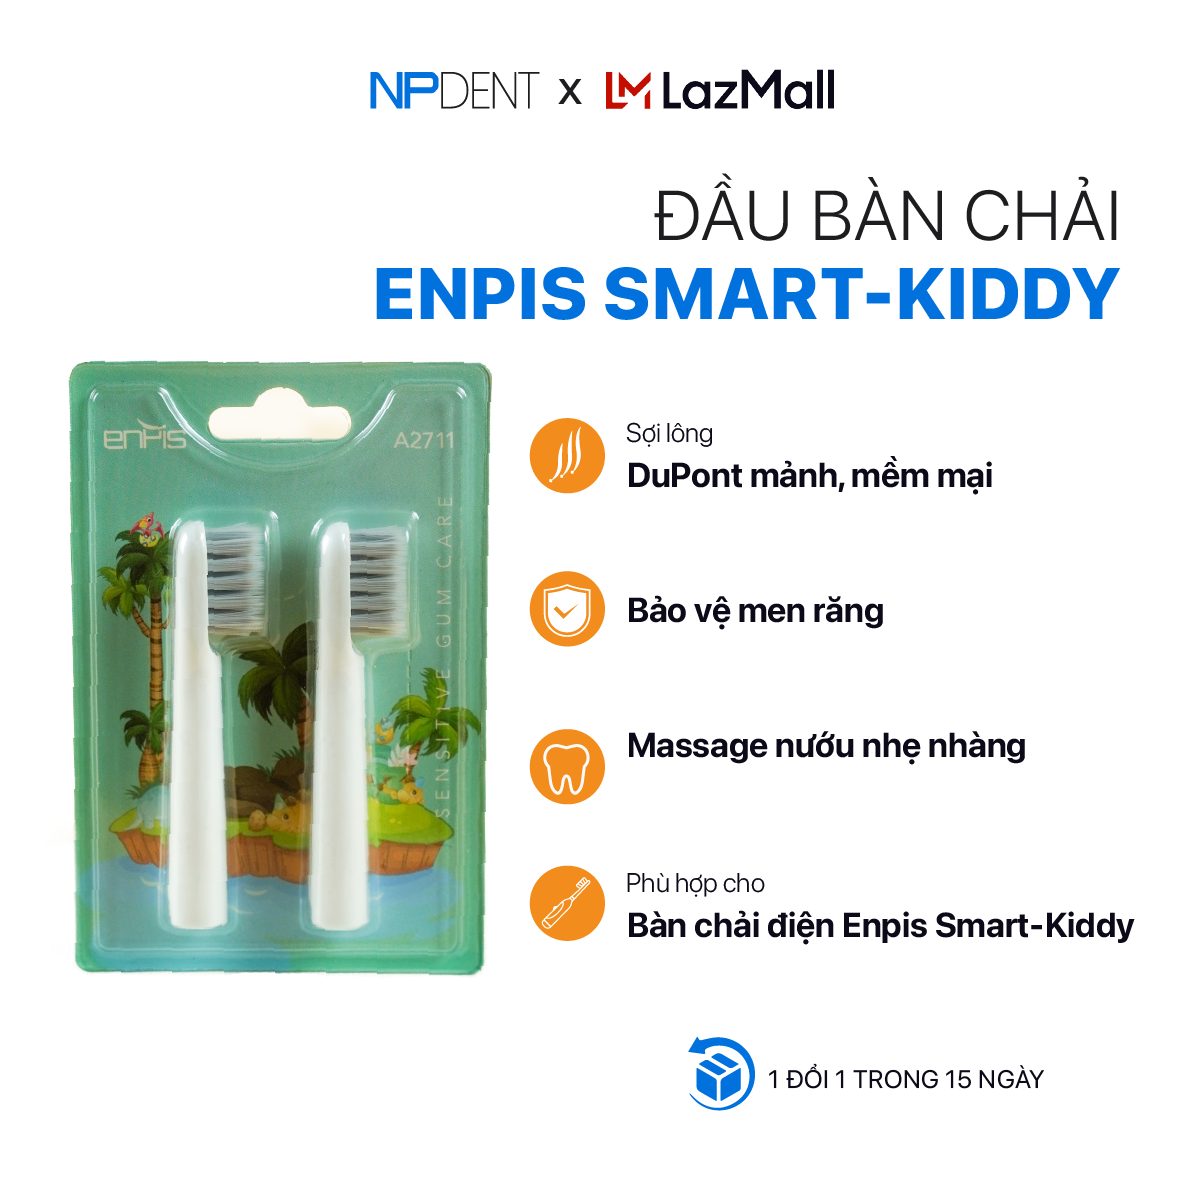 Set 2 đầu bàn chải thay thế dòng Smart-Kiddy chính hãng ENPIS